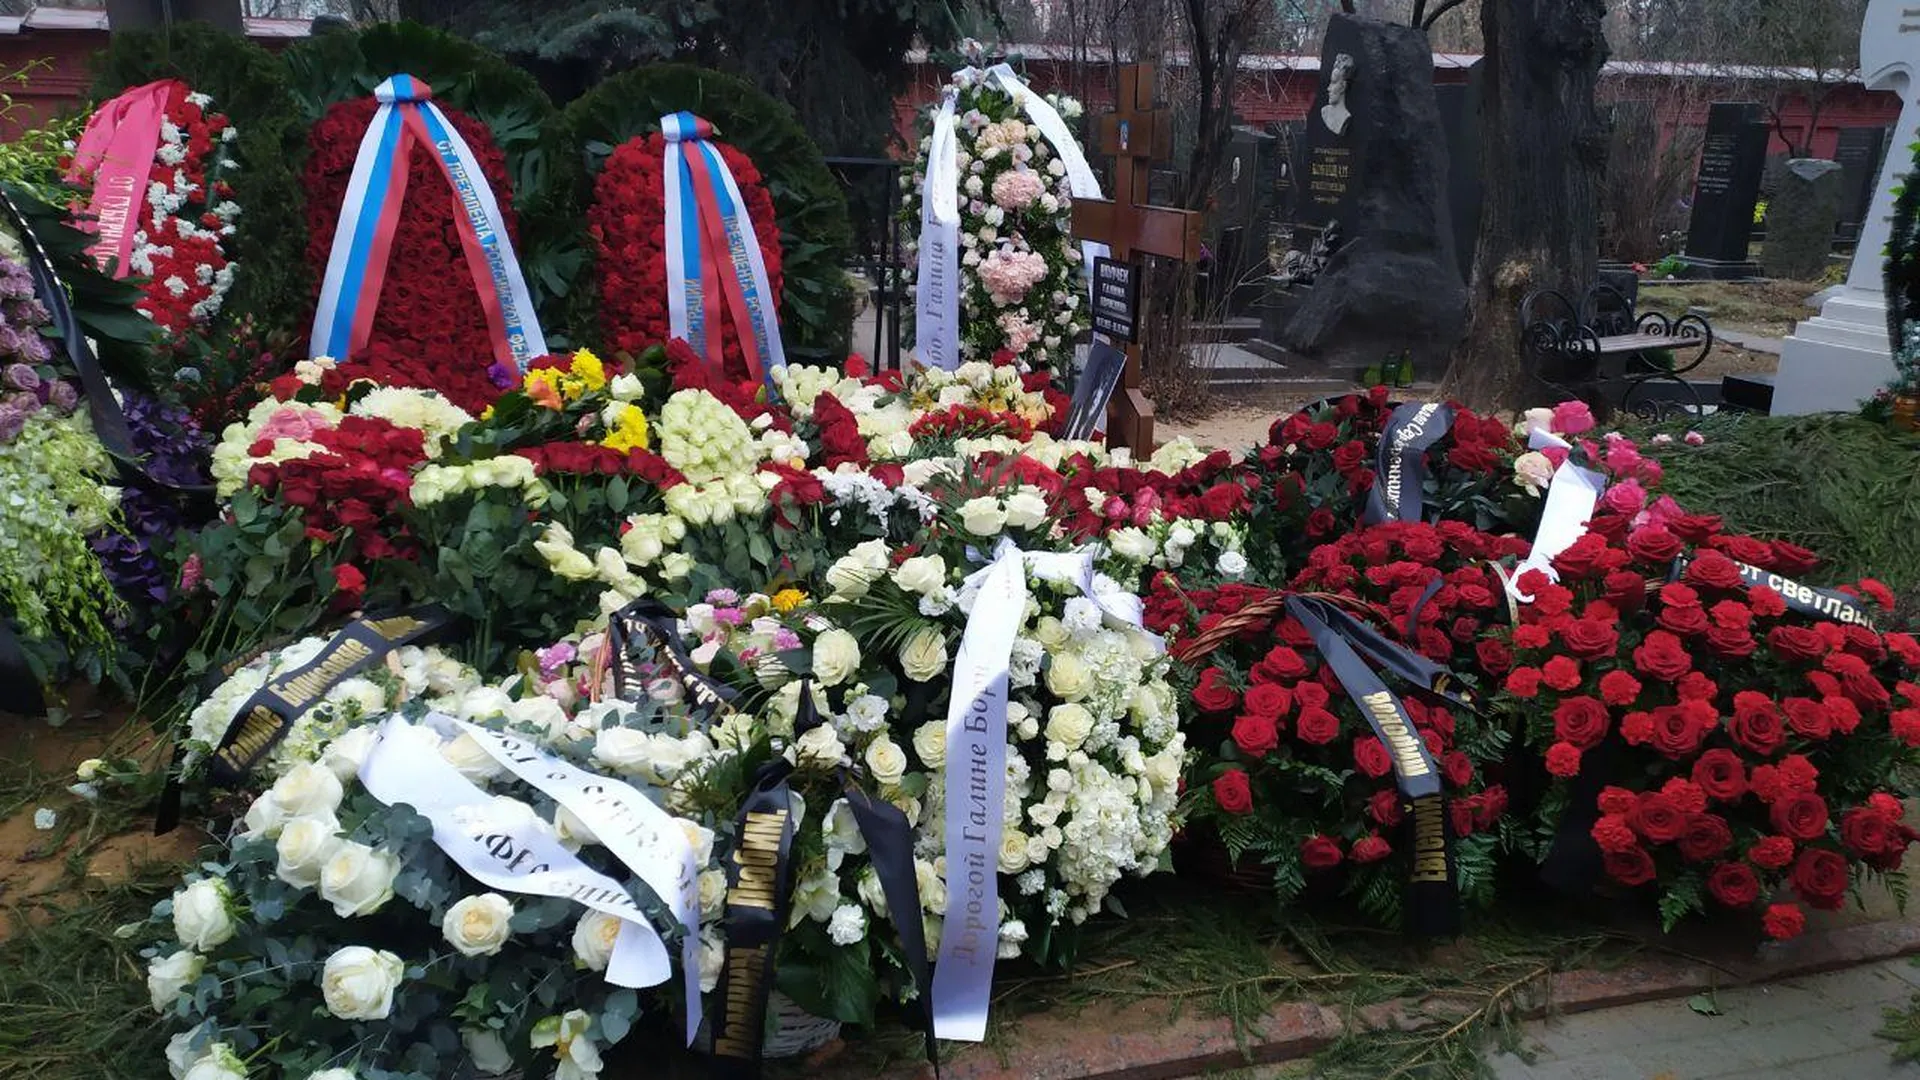 Галину Волчек похоронили рядом с Олегом Табаковым и Леонидом Броневым